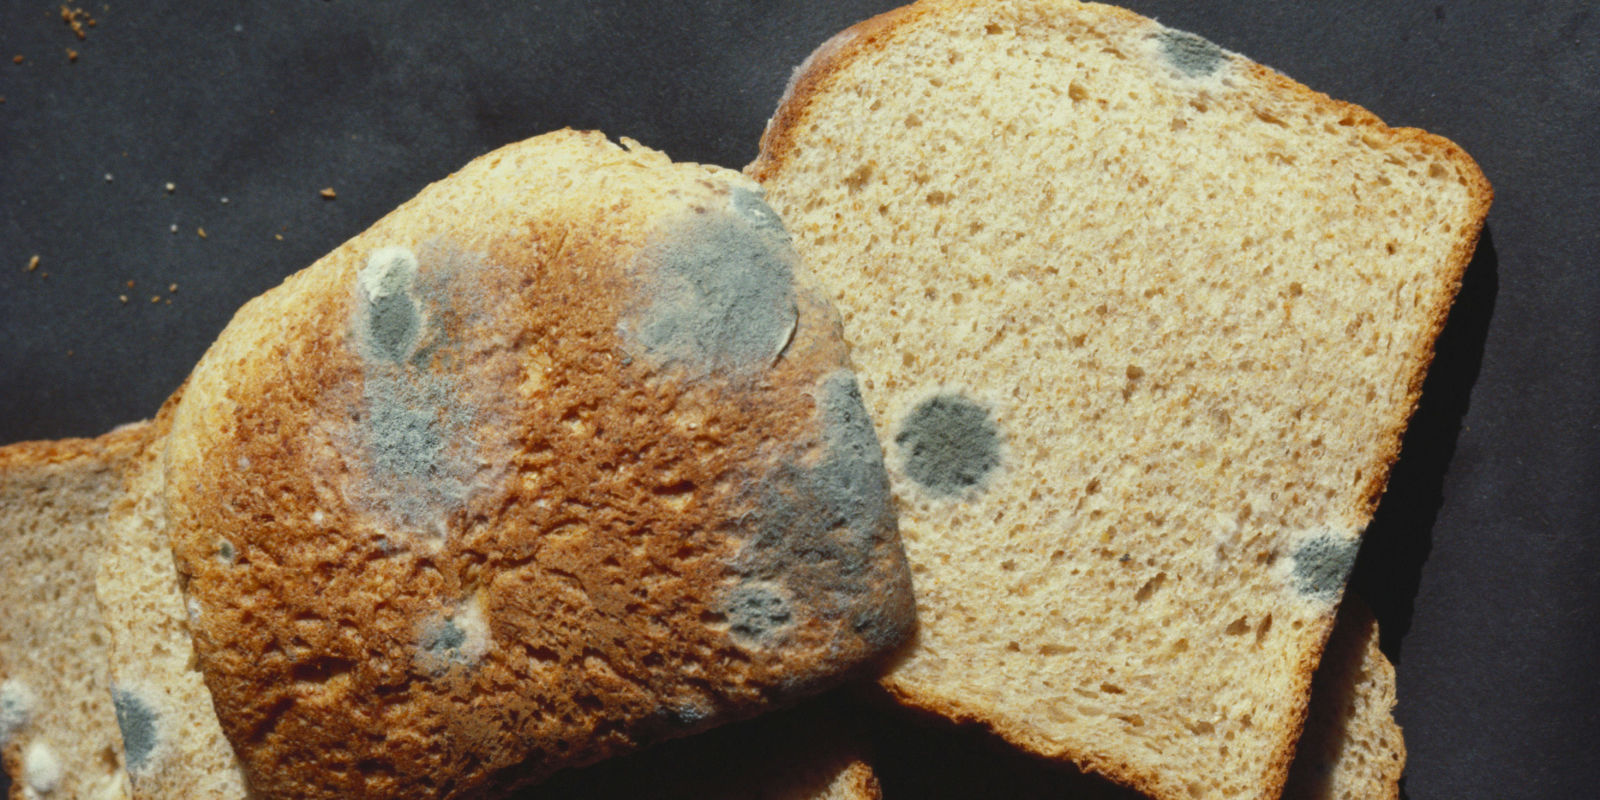 چه عوامل محیطی در رشد کپک روی نان نقش مثبتی دارند؟